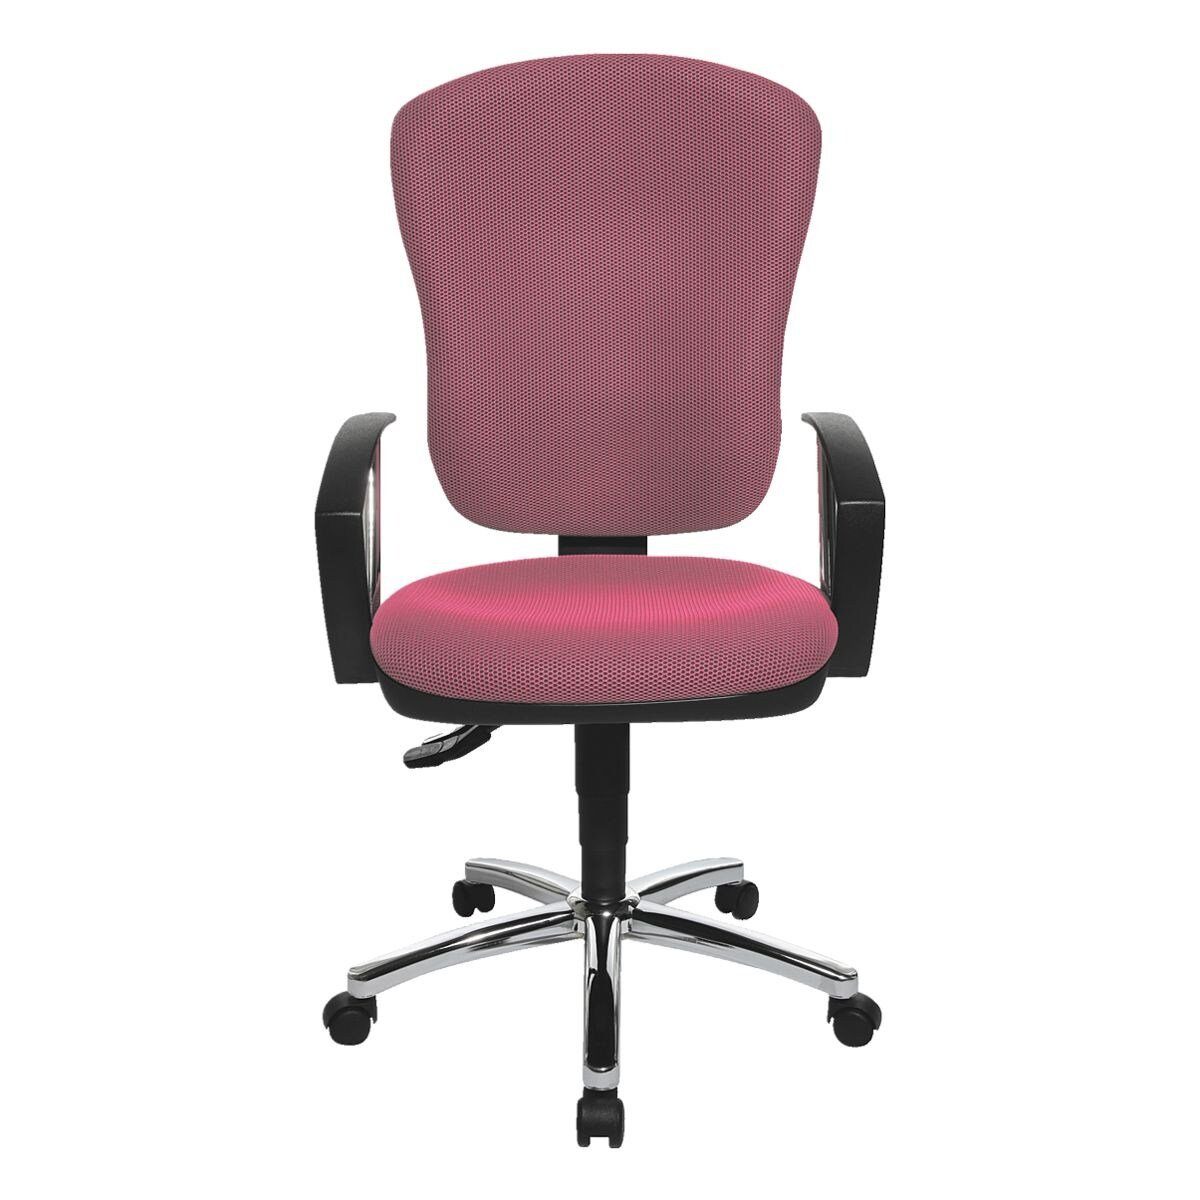 80, konturgeformter Armlehnen) Beckenstütze Steel Muldensitz / pink mit TOPSTAR Lehne, Schreibtischstuhl Point (ohne